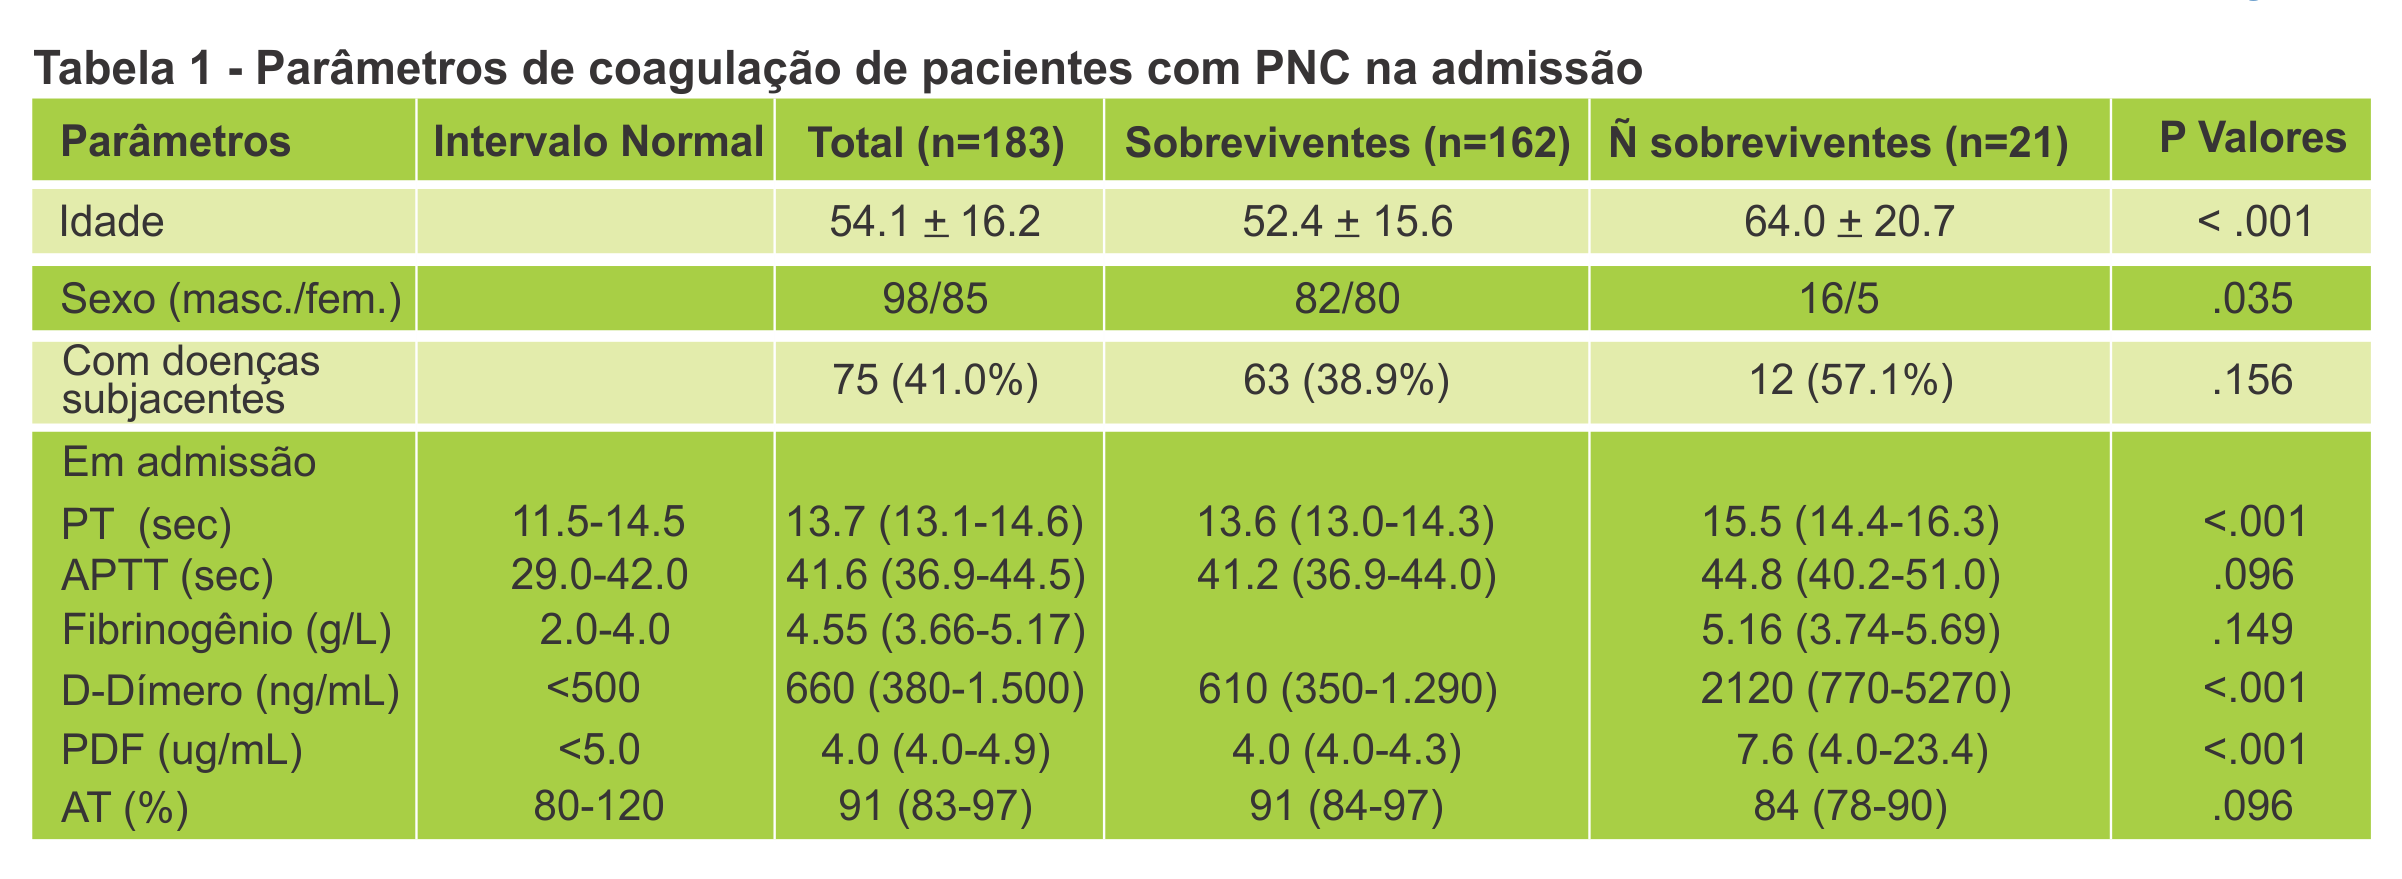 Tabela 1 - Parâmetros de coagulação de pacientes com PNC na admissão